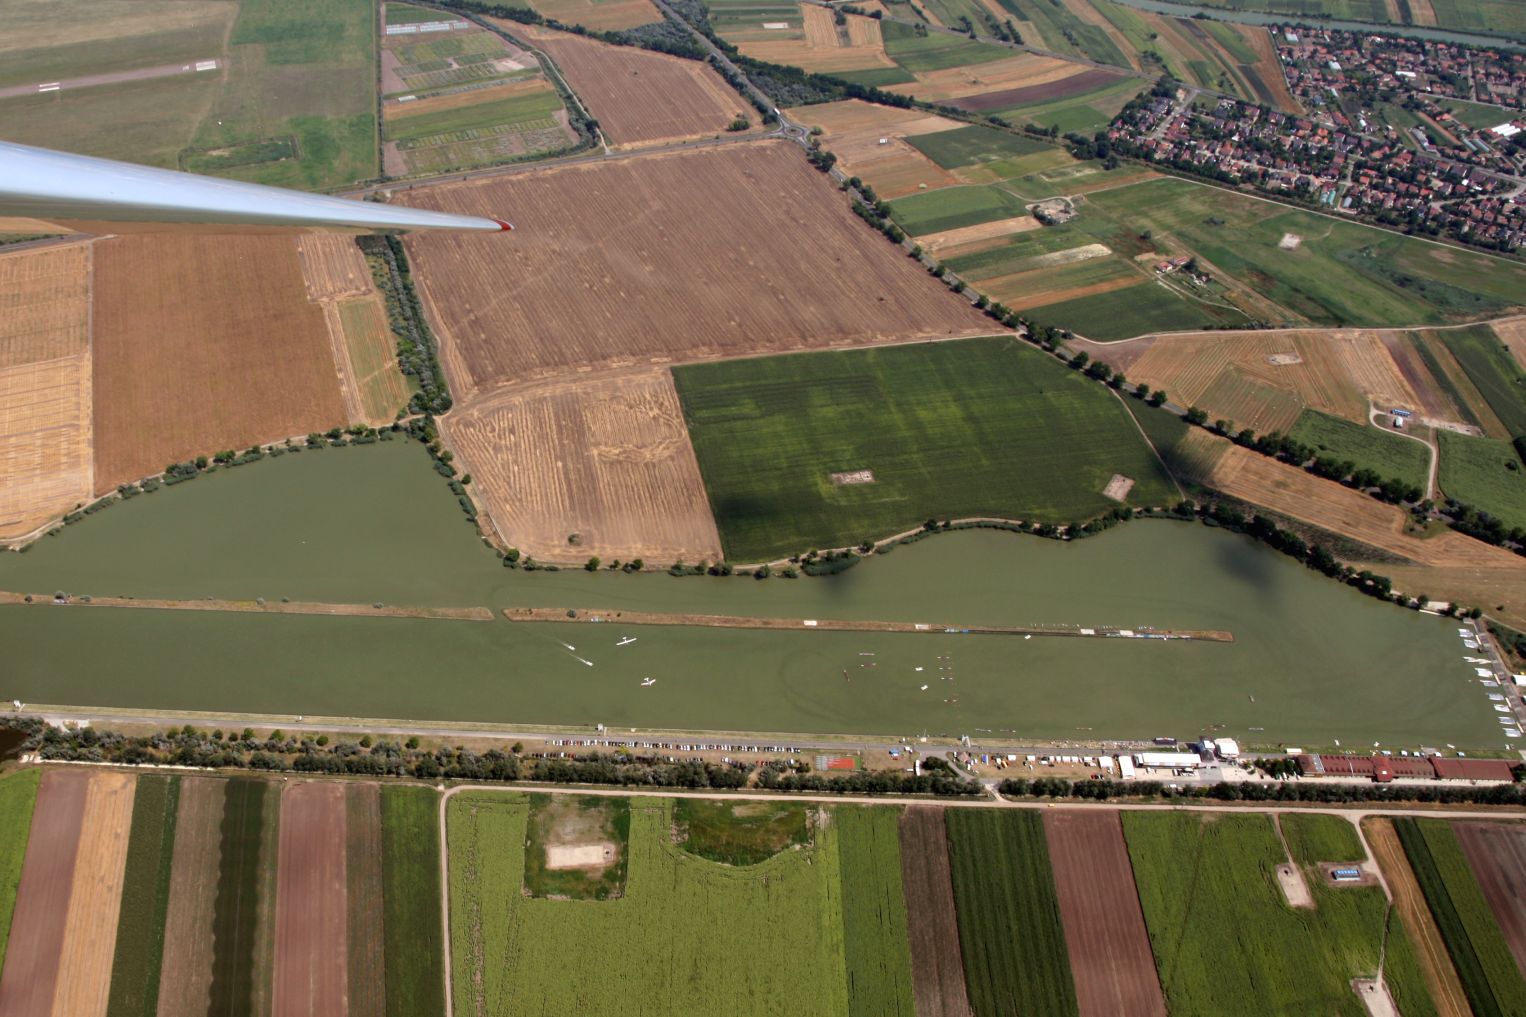 Látványos gebergés a légtérben: felül balra a szegedi reptér, alul a vízisportok hona, a víz felett a légisportok képviselői